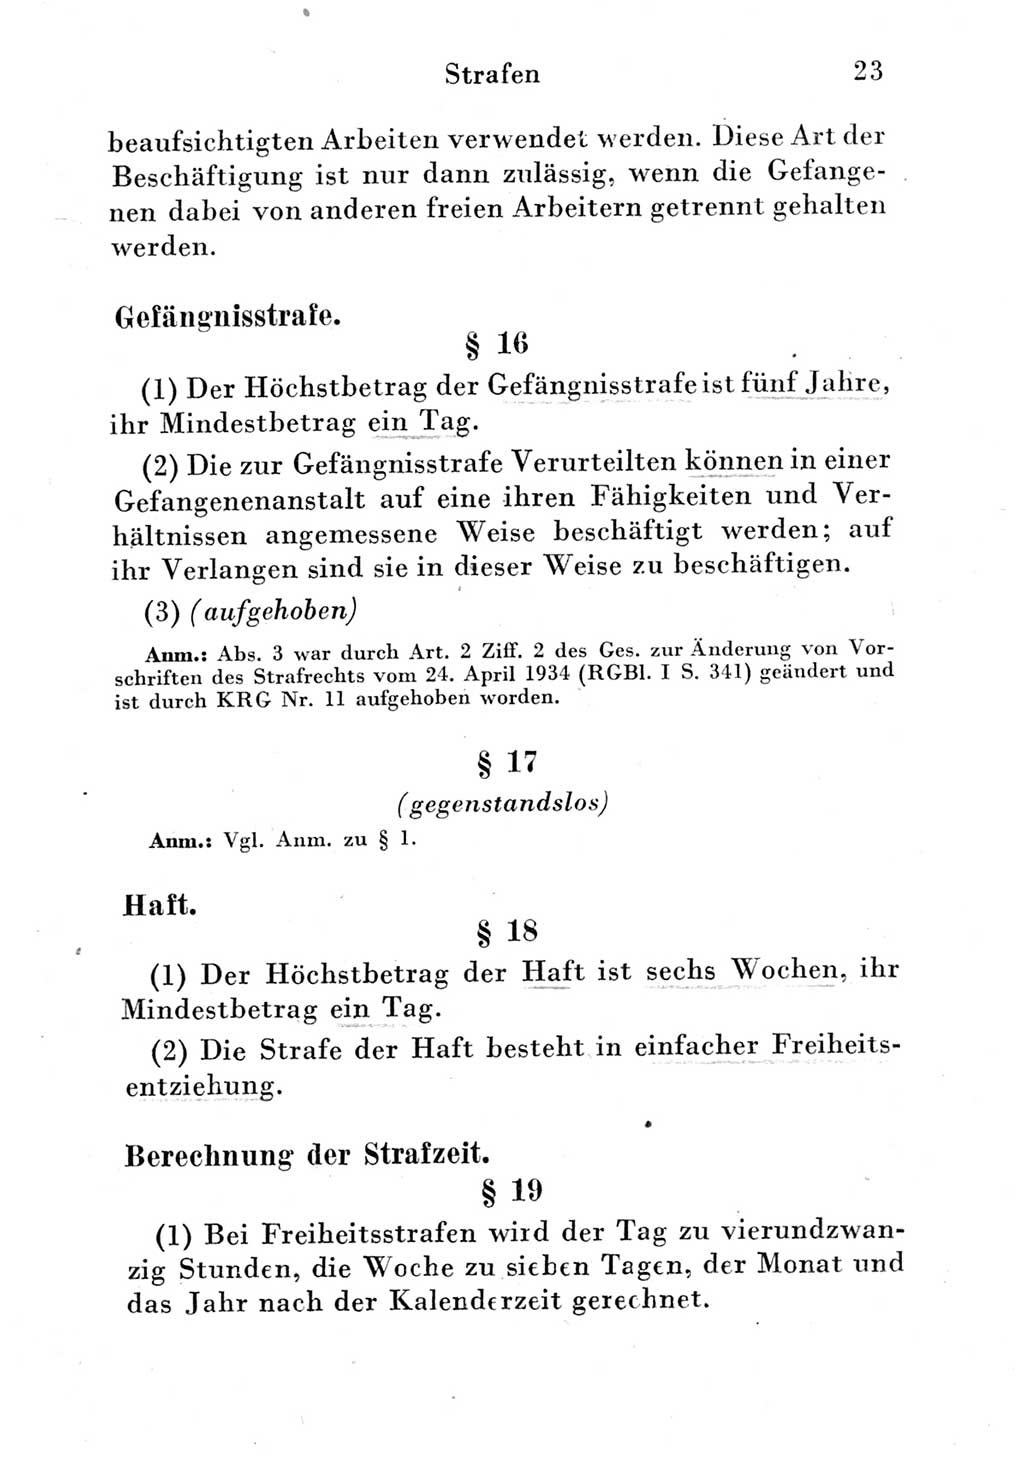 Strafgesetzbuch (StGB) und andere Strafgesetze [Deutsche Demokratische Republik (DDR)] 1951, Seite 23 (StGB Strafges. DDR 1951, S. 23)